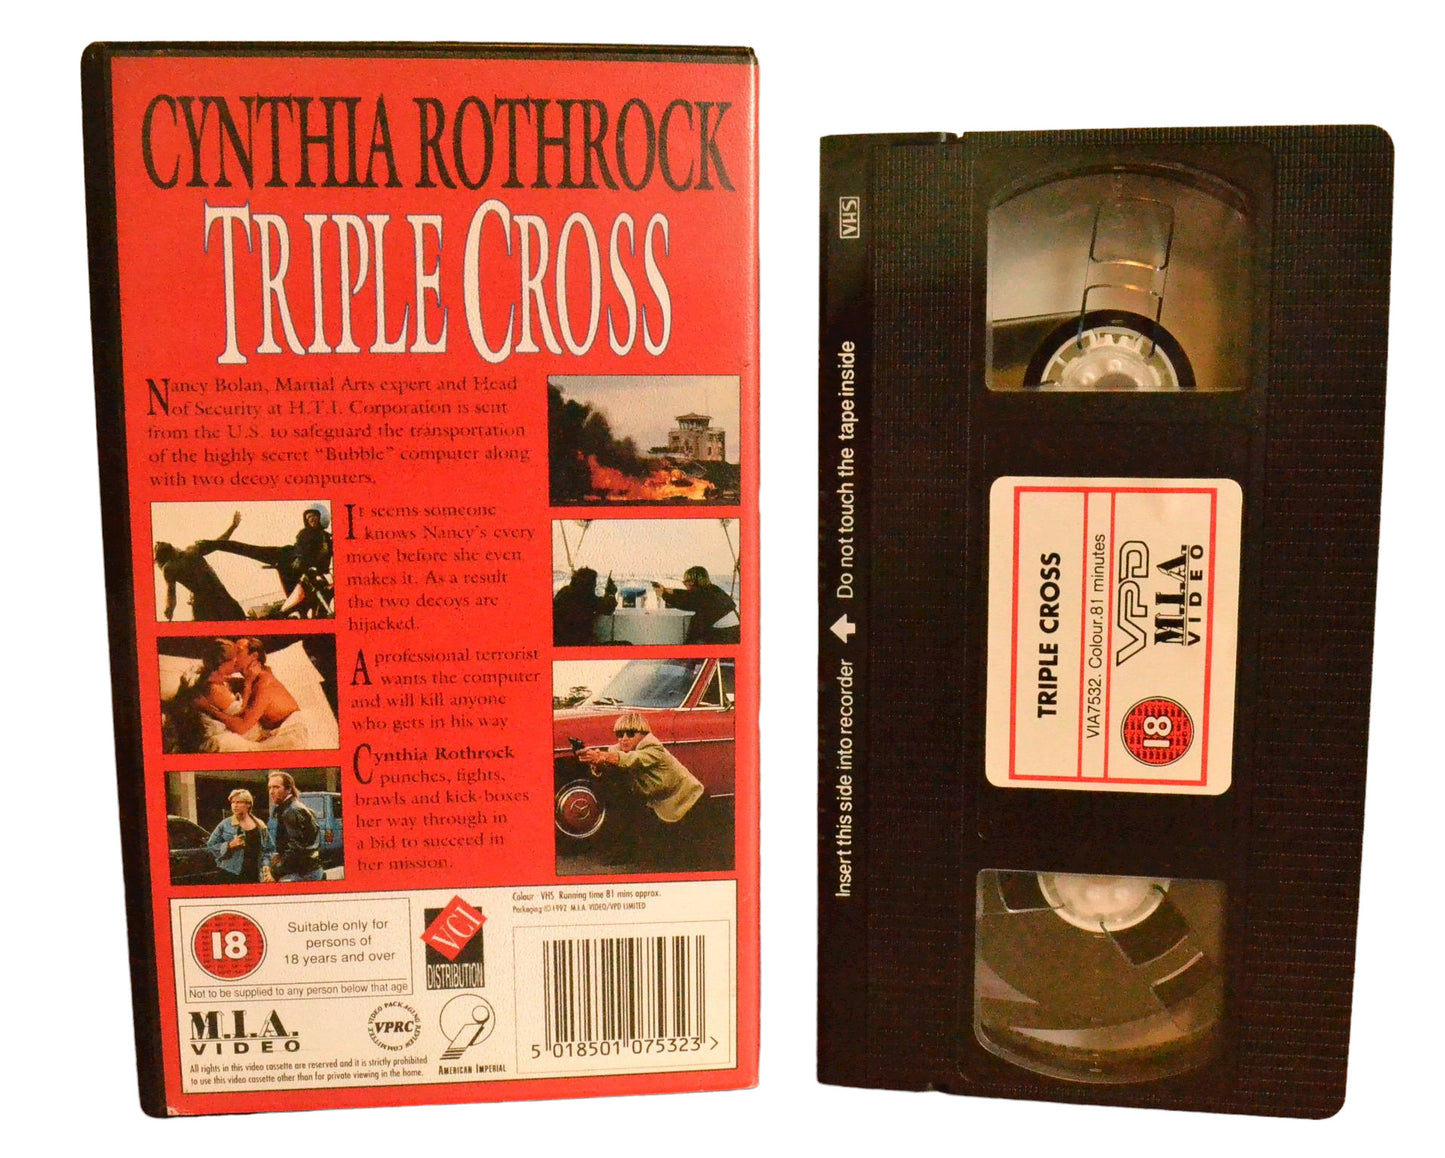 Triple Cross - Cynthia Rothrock - M.I.A Video - Action - Pal - VHS-